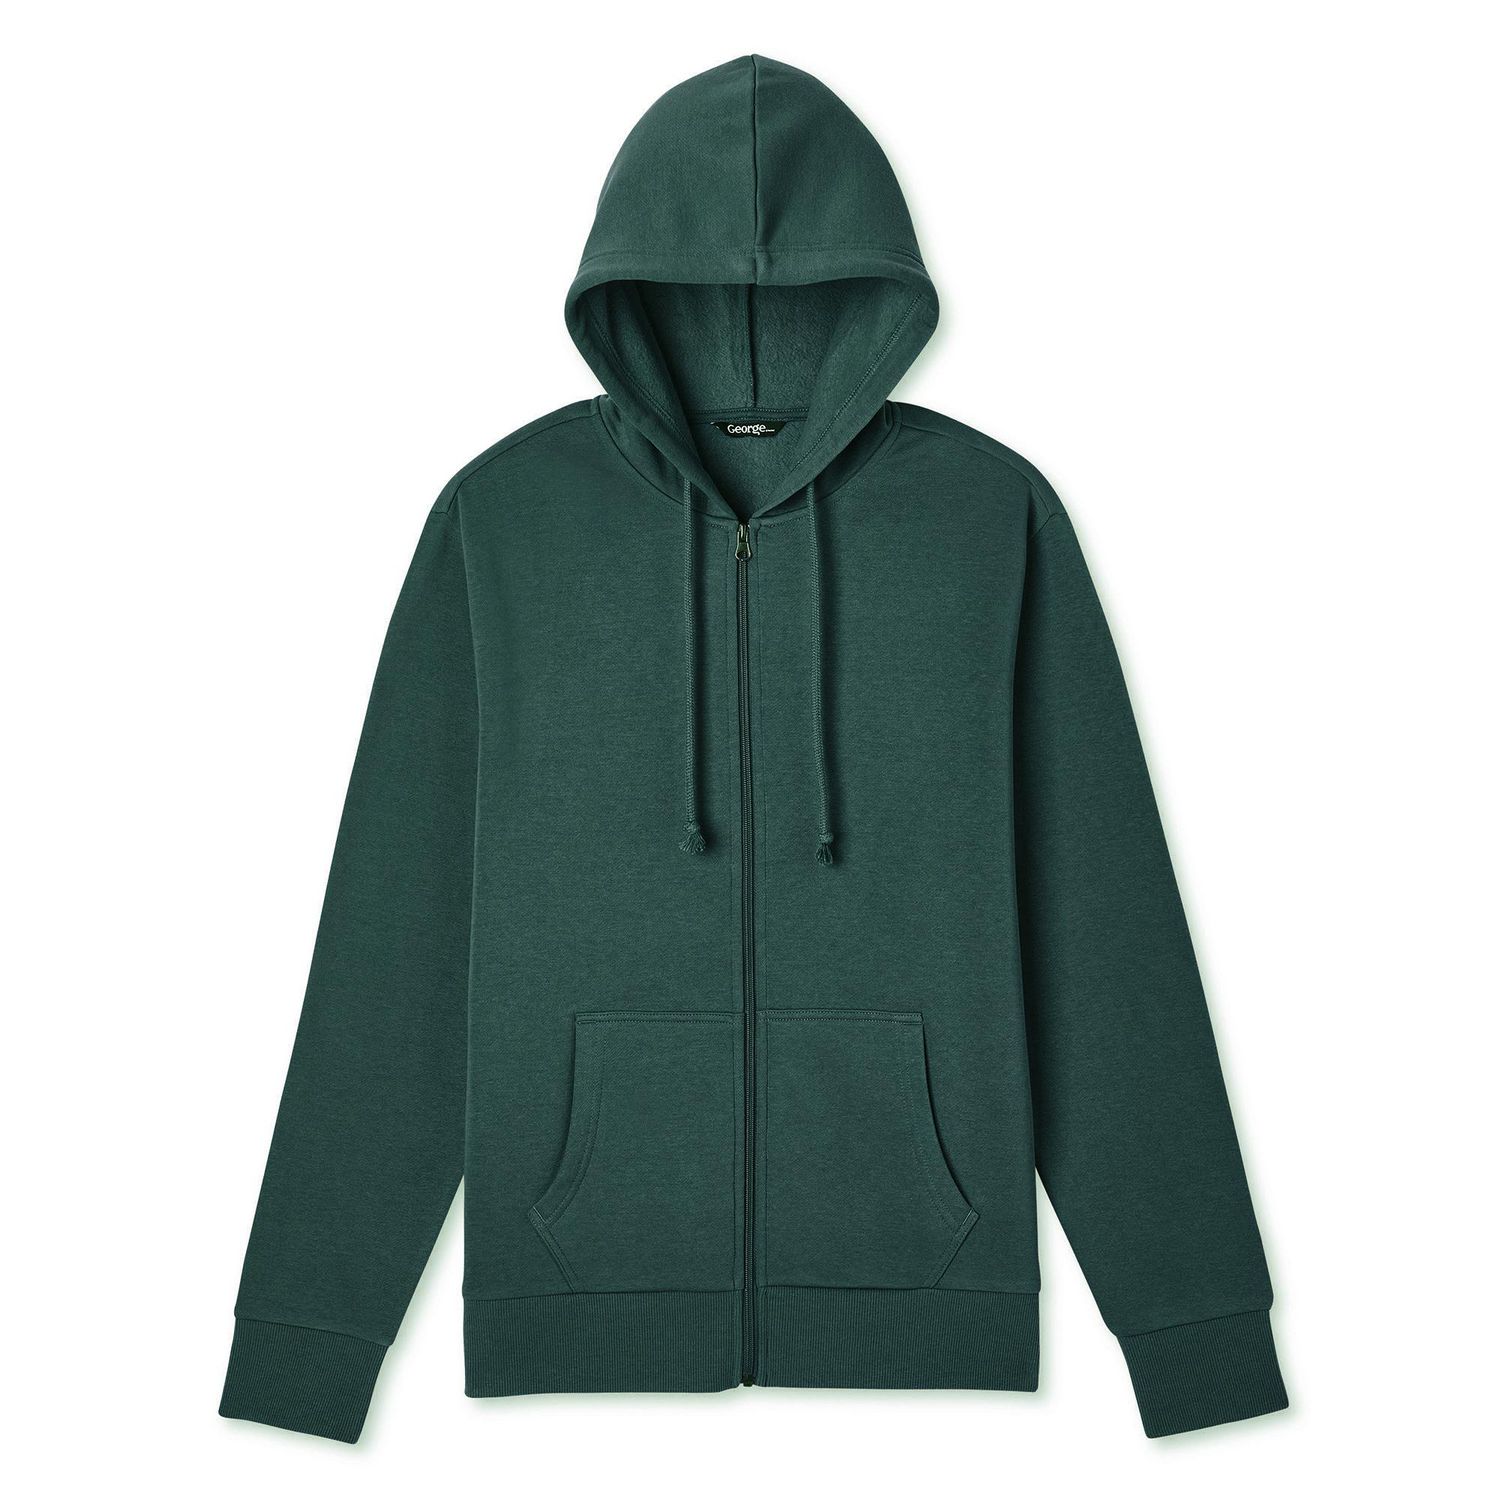 売り出し格安 dall clothing moon zip hoodie サイズXL パーカー